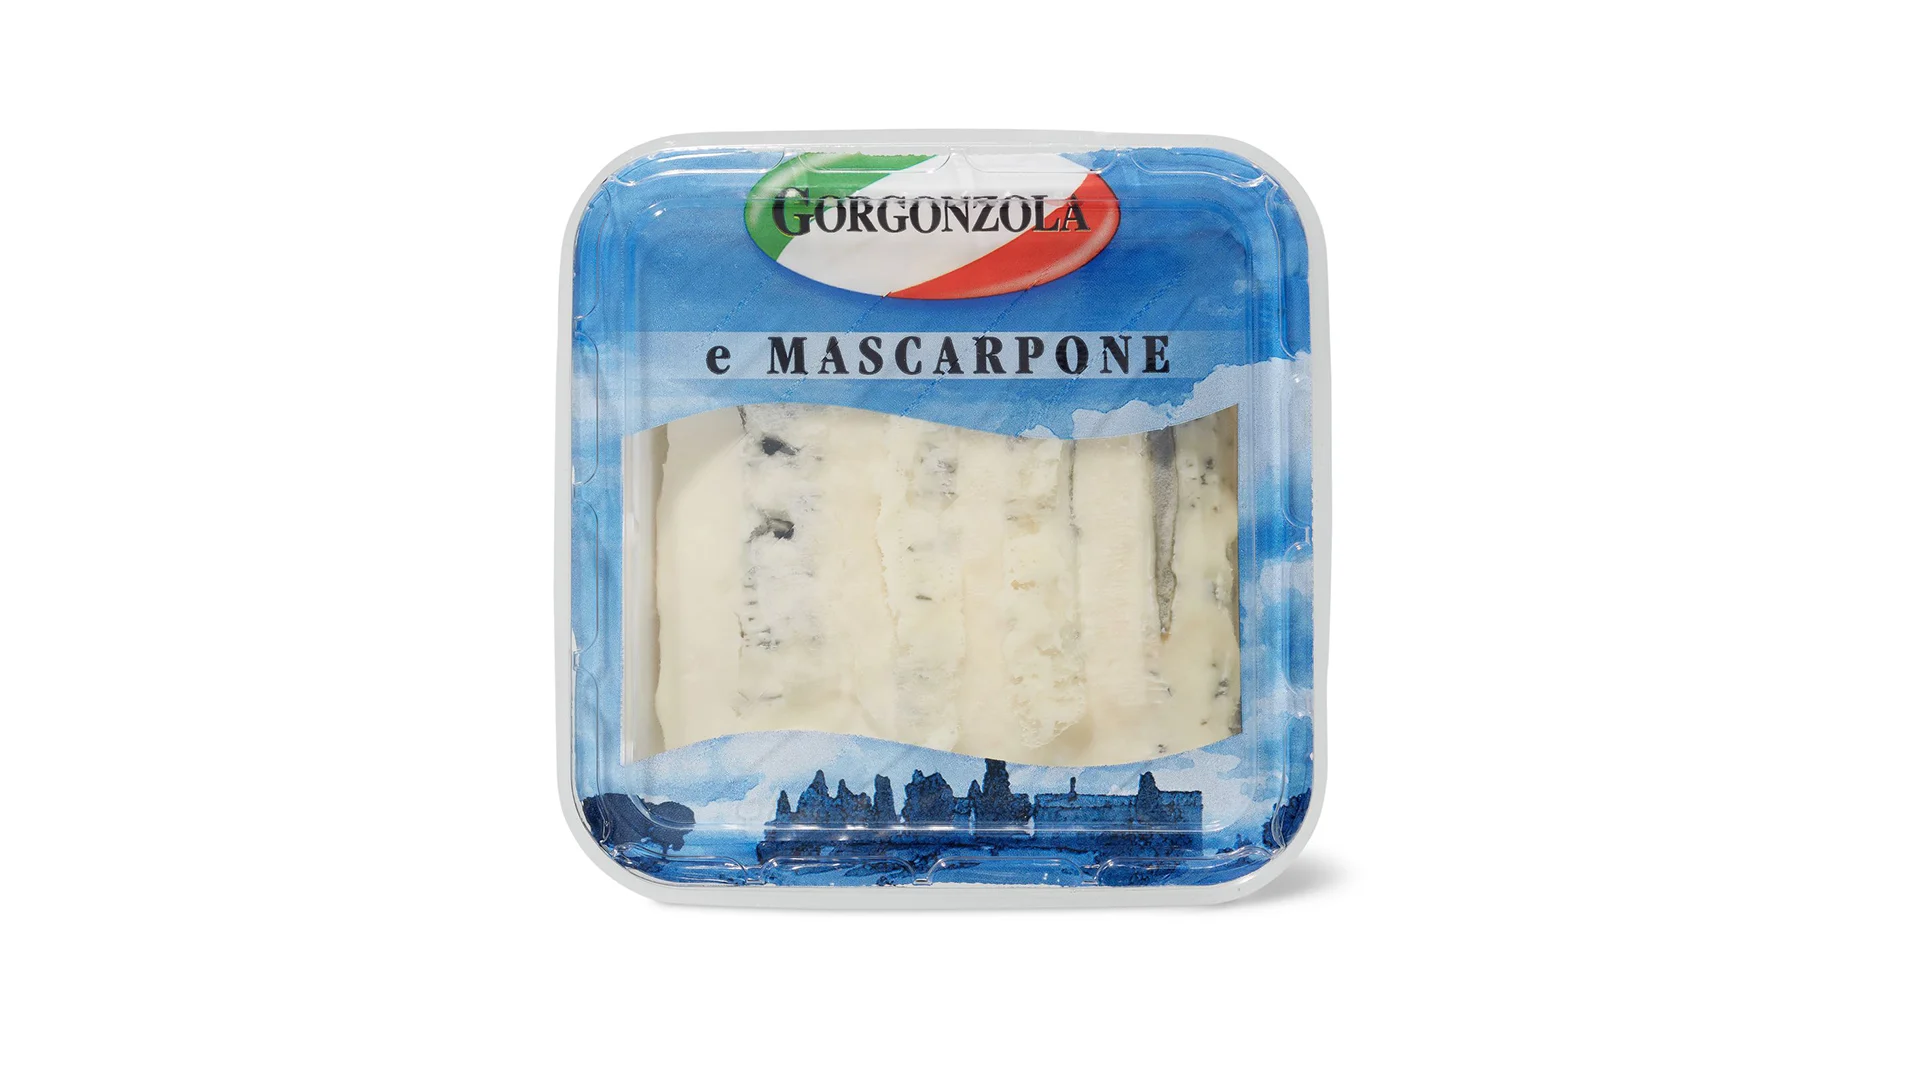 rrueckruf-gorgonzola-mascarpone-header-1920x1080